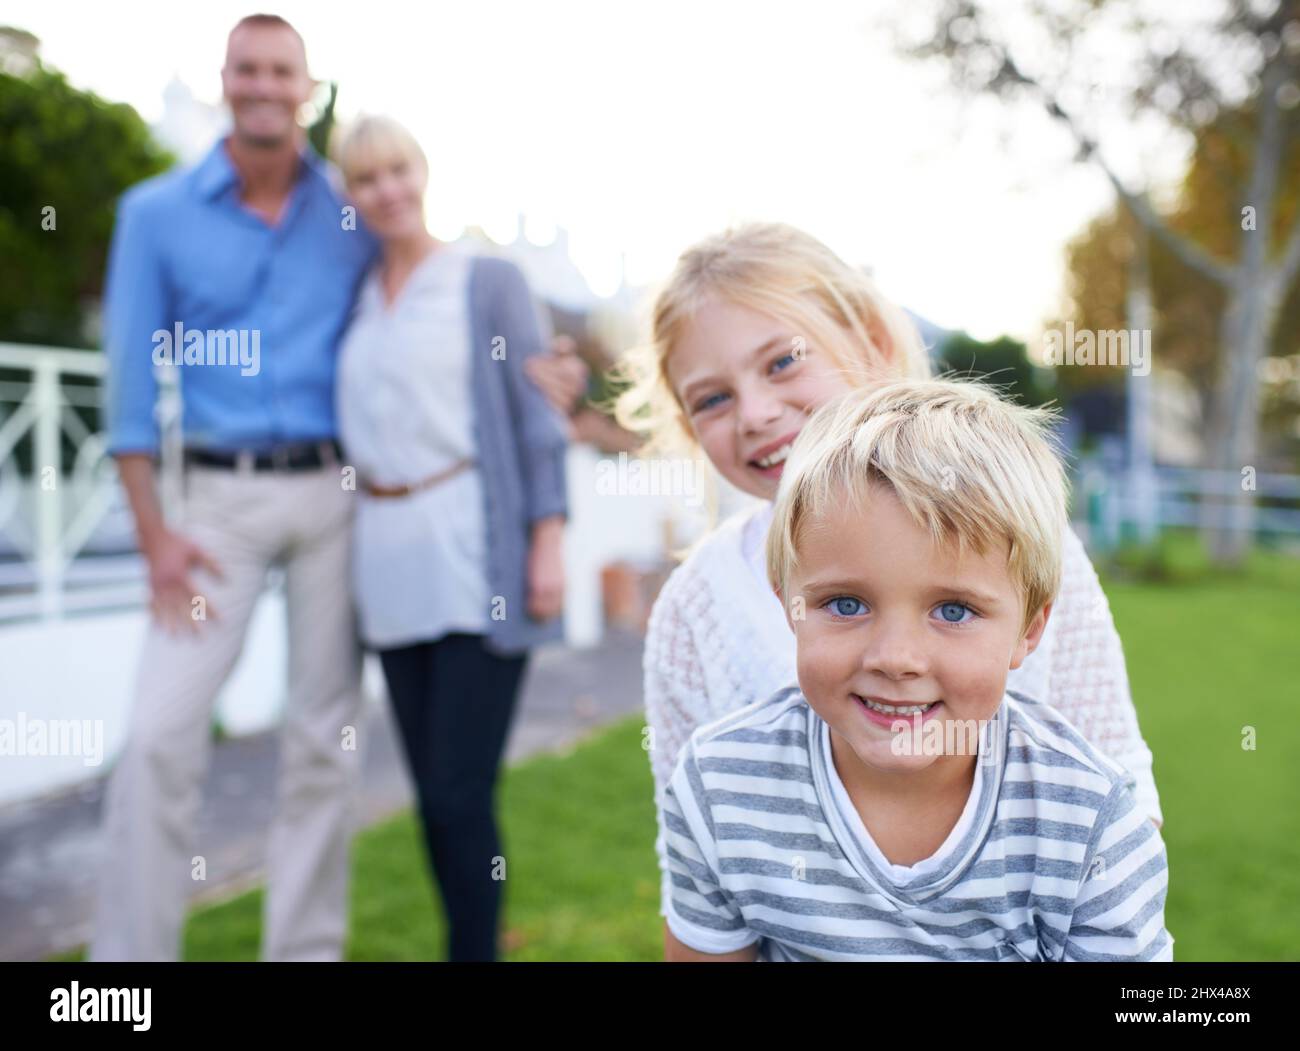 Wir sind so stolz auf unsere Kinder. Eine glückliche Familie in zwei Generationen, die im Freien lächelt. Stockfoto